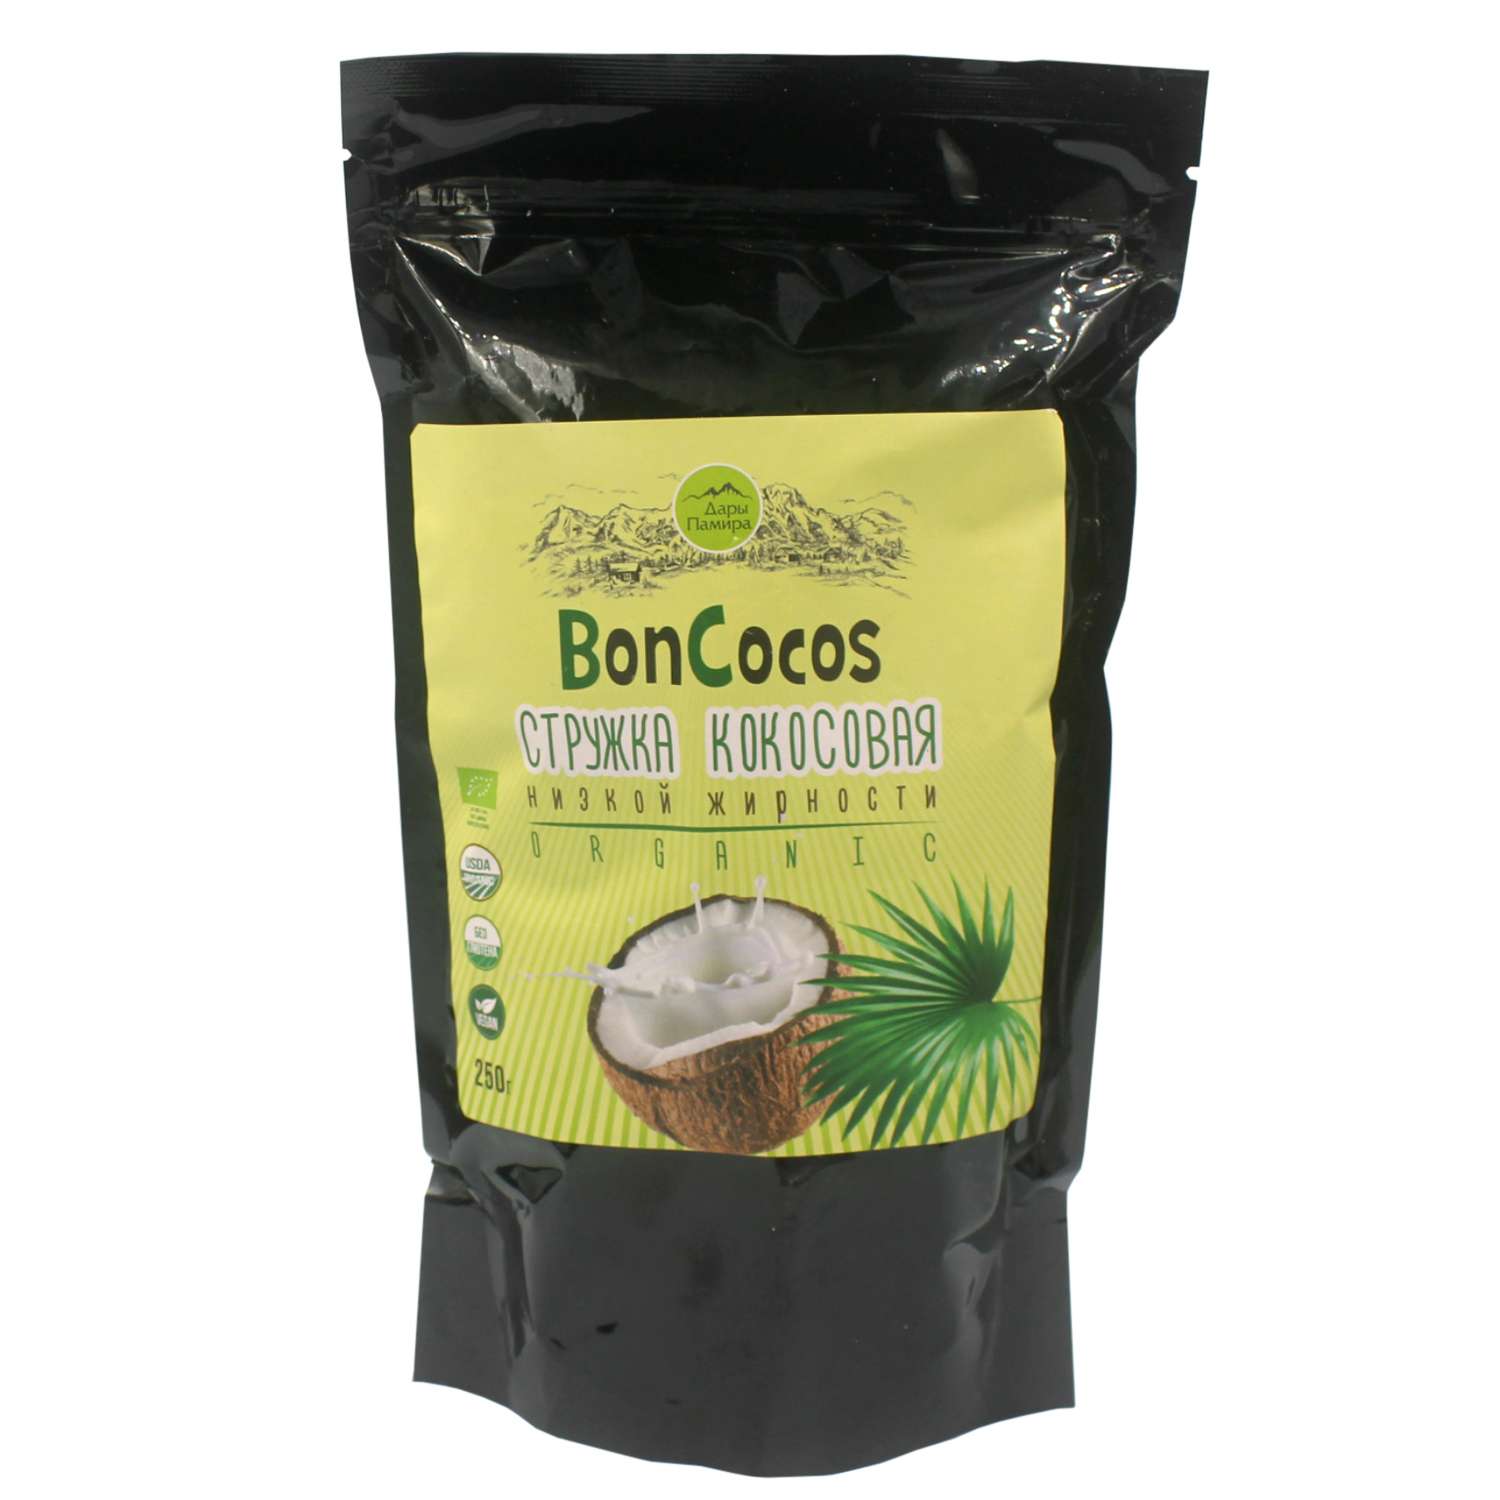 Стружка Дары Памира Boncocos кокосовая низкой жирности 250г - фото 1